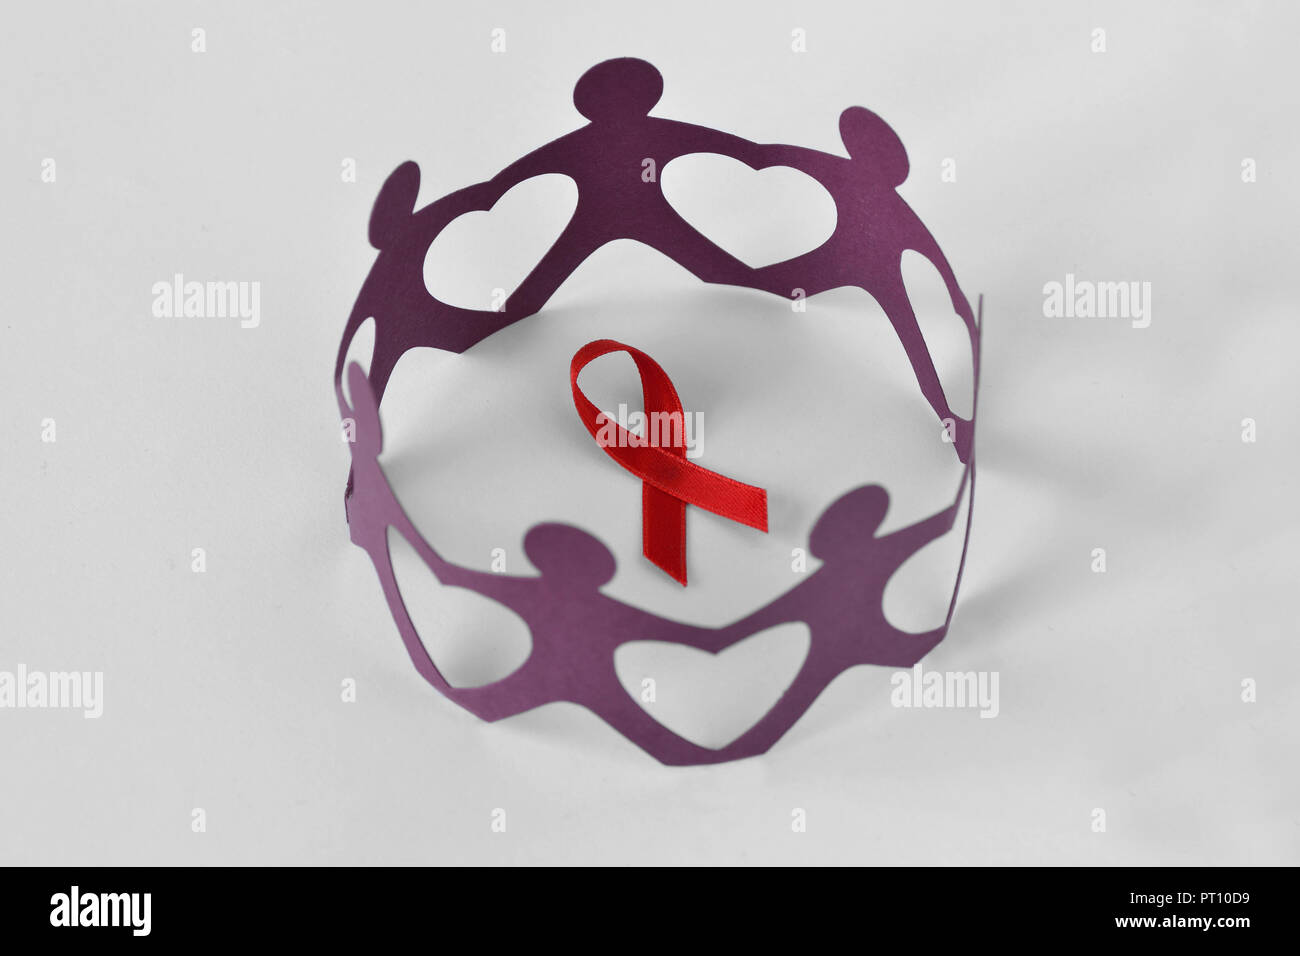 Papier die Menschen in einem Kreis um Red Ribbon auf weißem Hintergrund - Aids Awareness Konzept Stockfoto